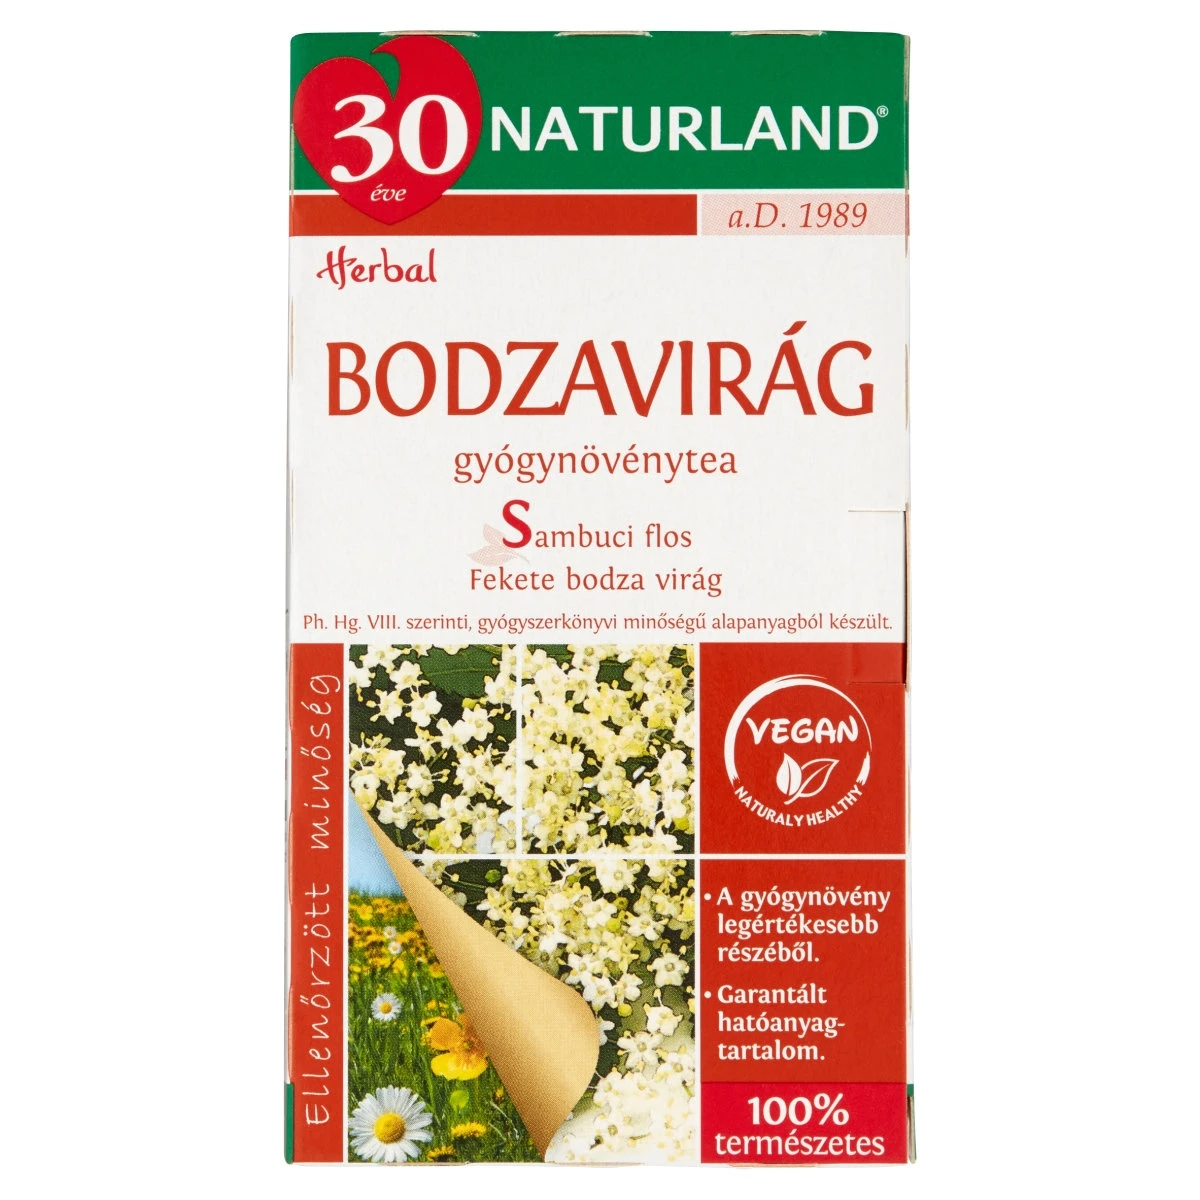 Naturland Herbal bodzavirág gyógynövénytea 20 filter 30 g